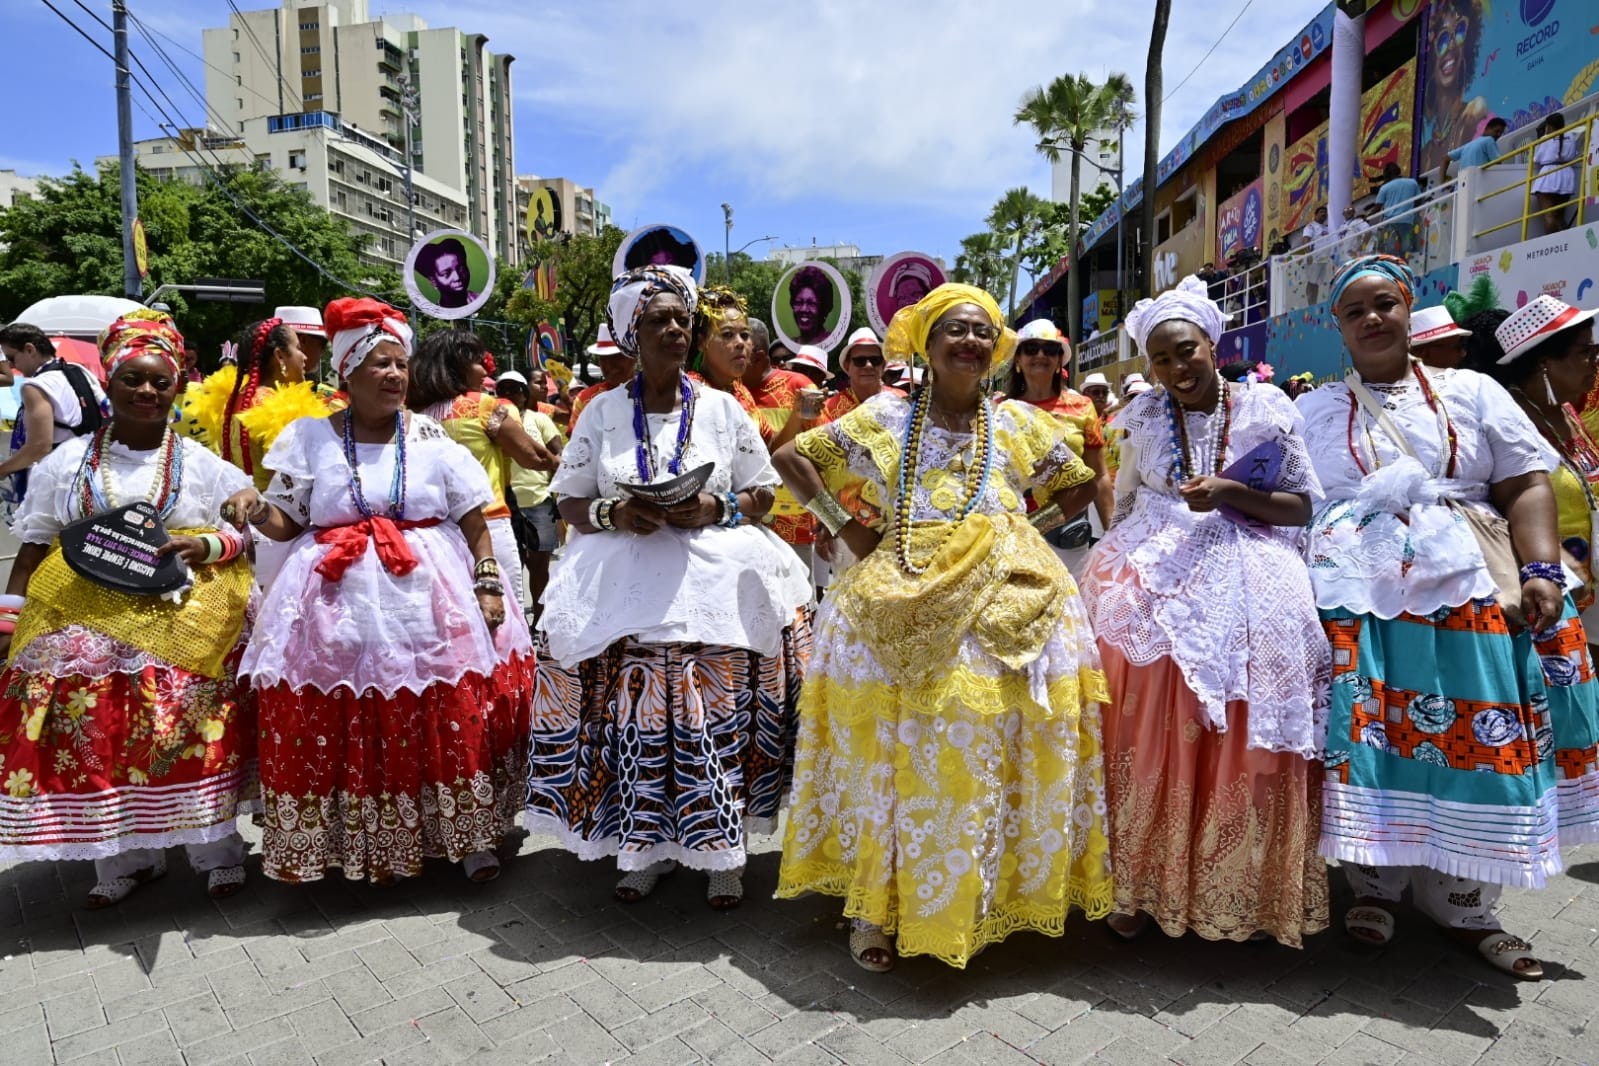 FOTOS: confira imagens do carnaval de Salvador nesta segunda-feira